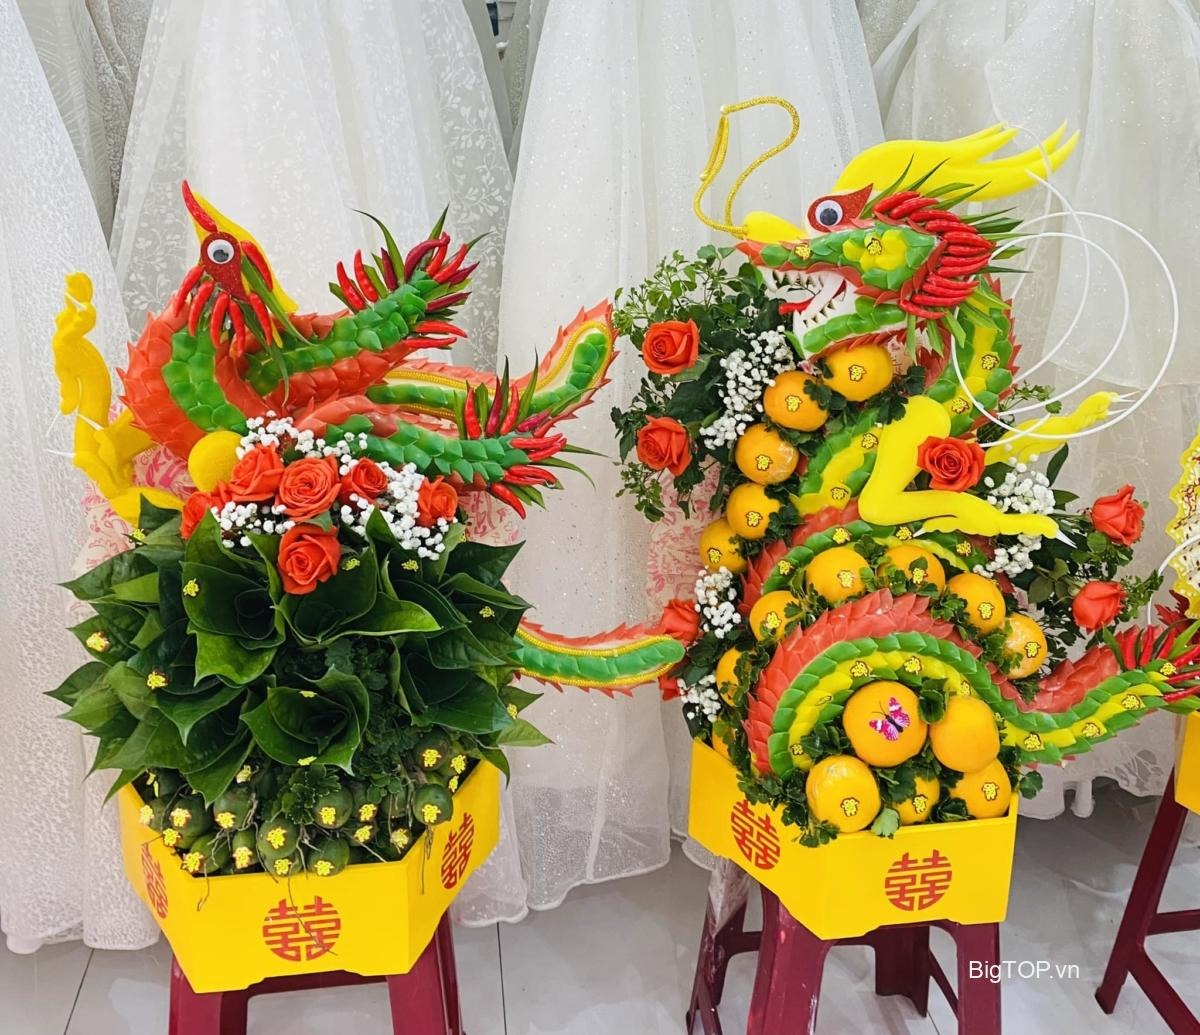 Địa chỉ nào nhận làm Mâm quả cưới nổi tiếng ở Đà Nẵng ?